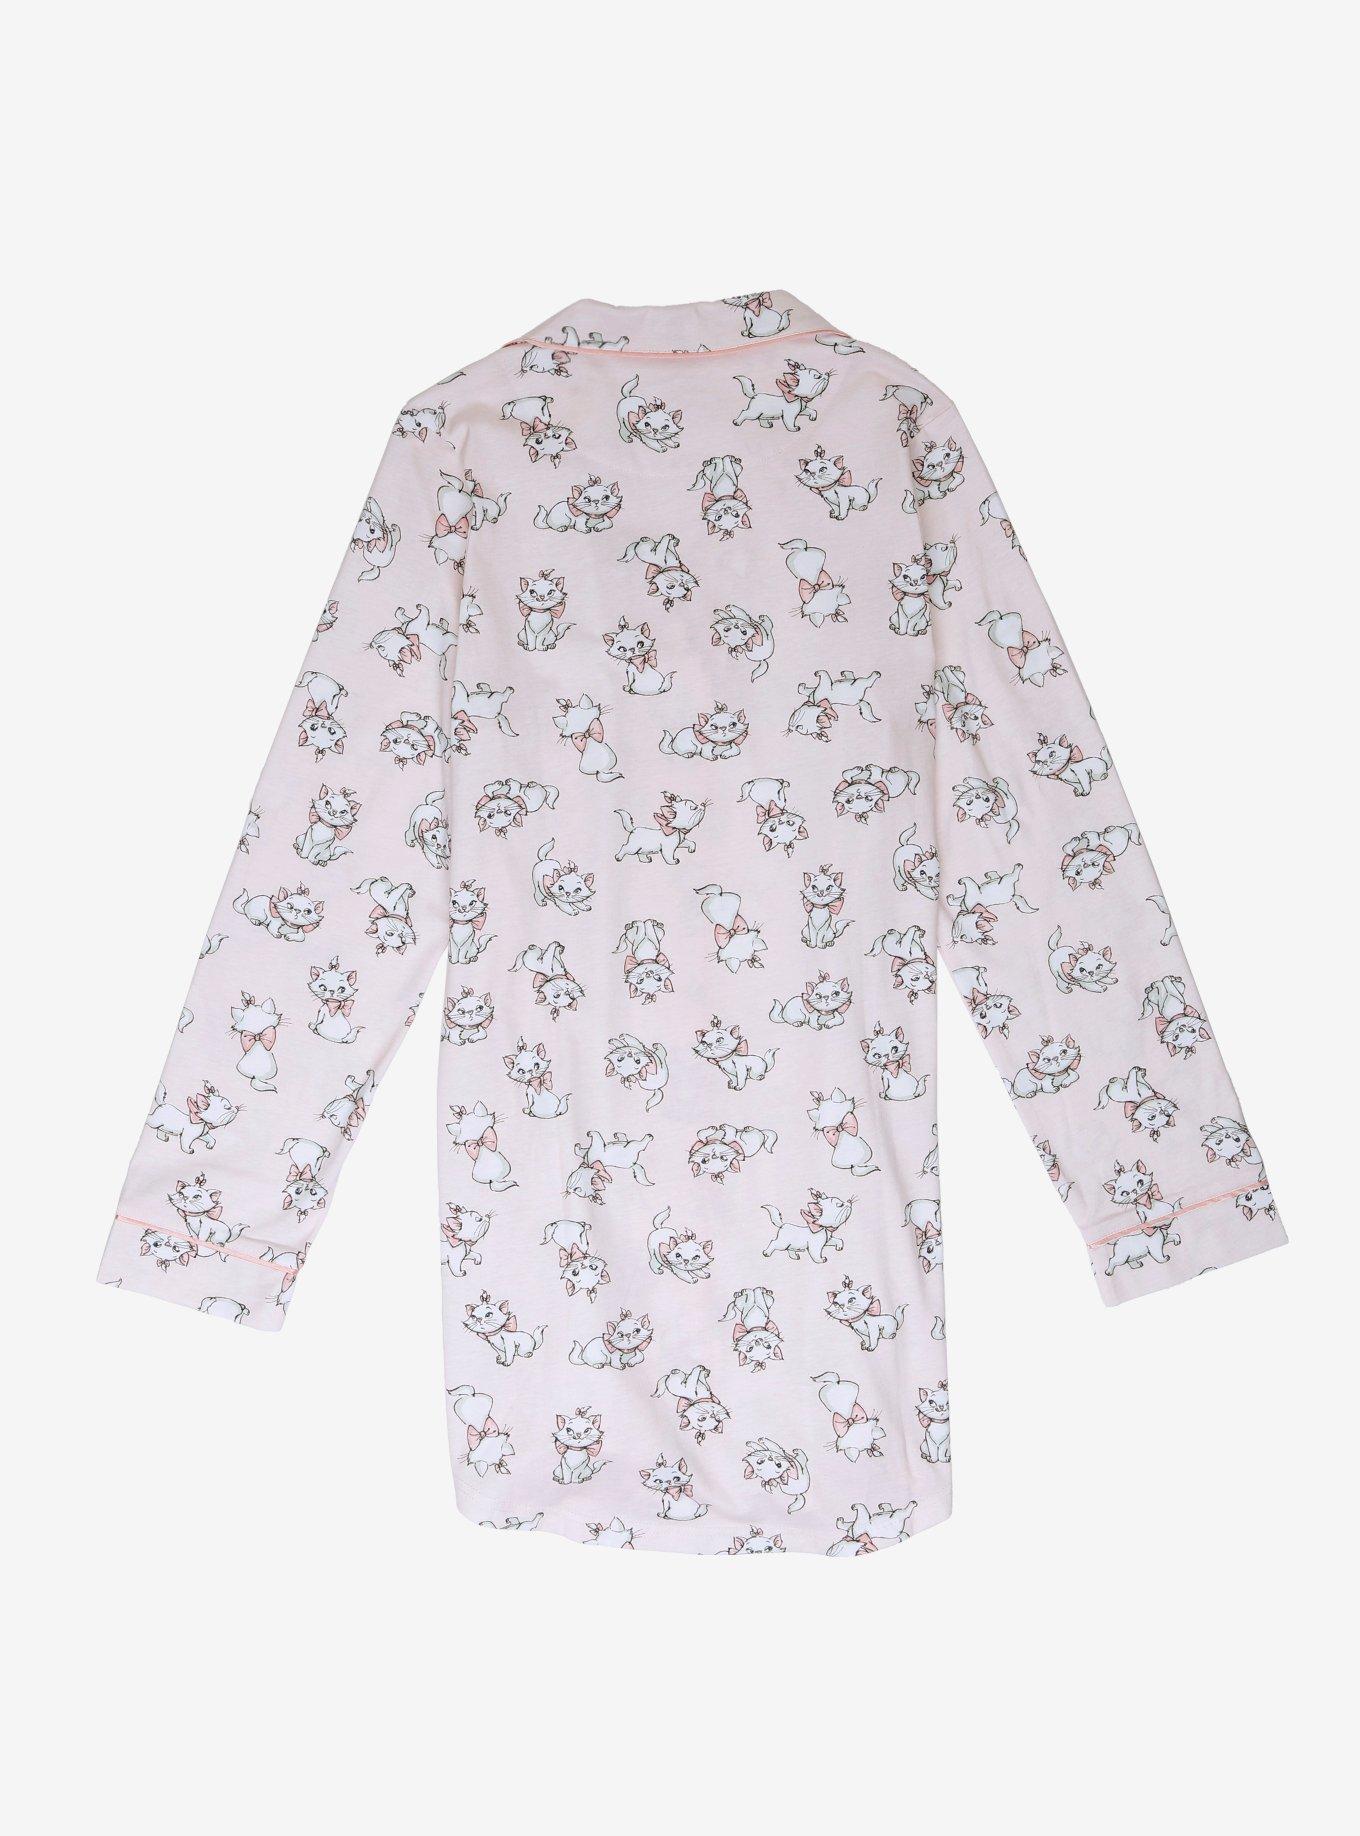 Disney The Aristocats Marie Allover Print Women's Sleep Shirt, LIGHT PINK, alternate